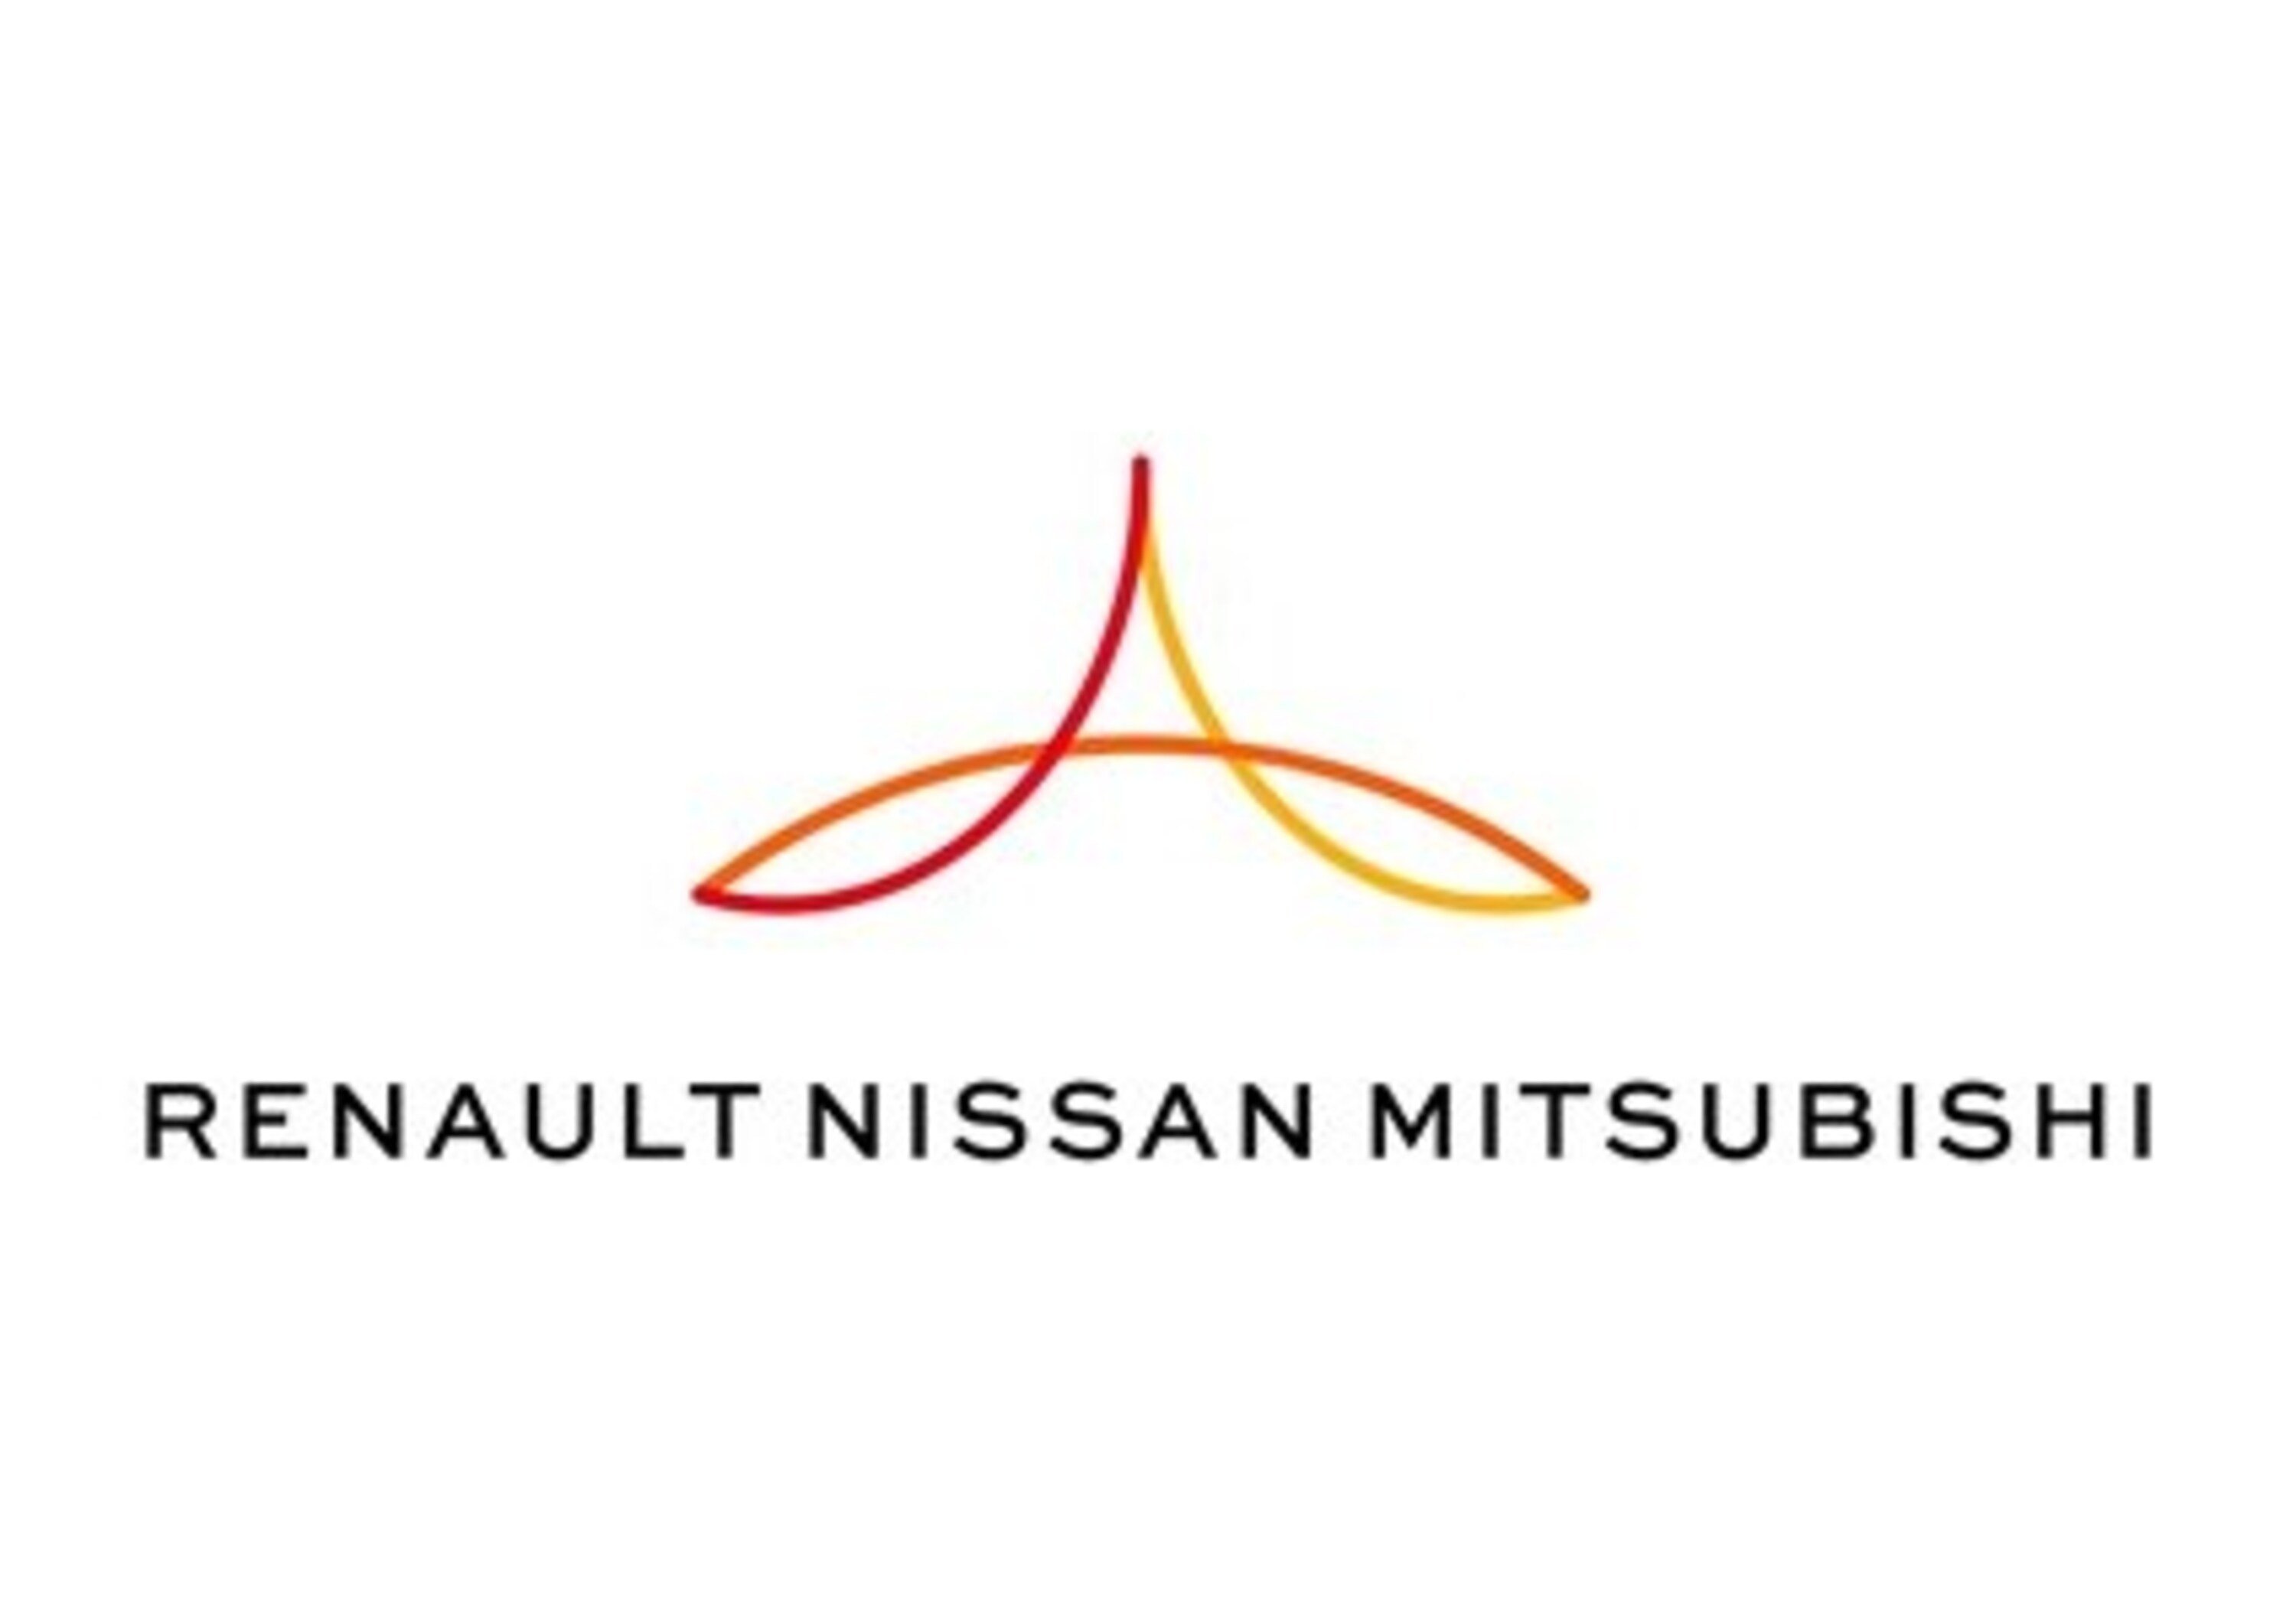 Renault-Nissan-Mitsubishi per un programma di car sharing elettrico in Cina